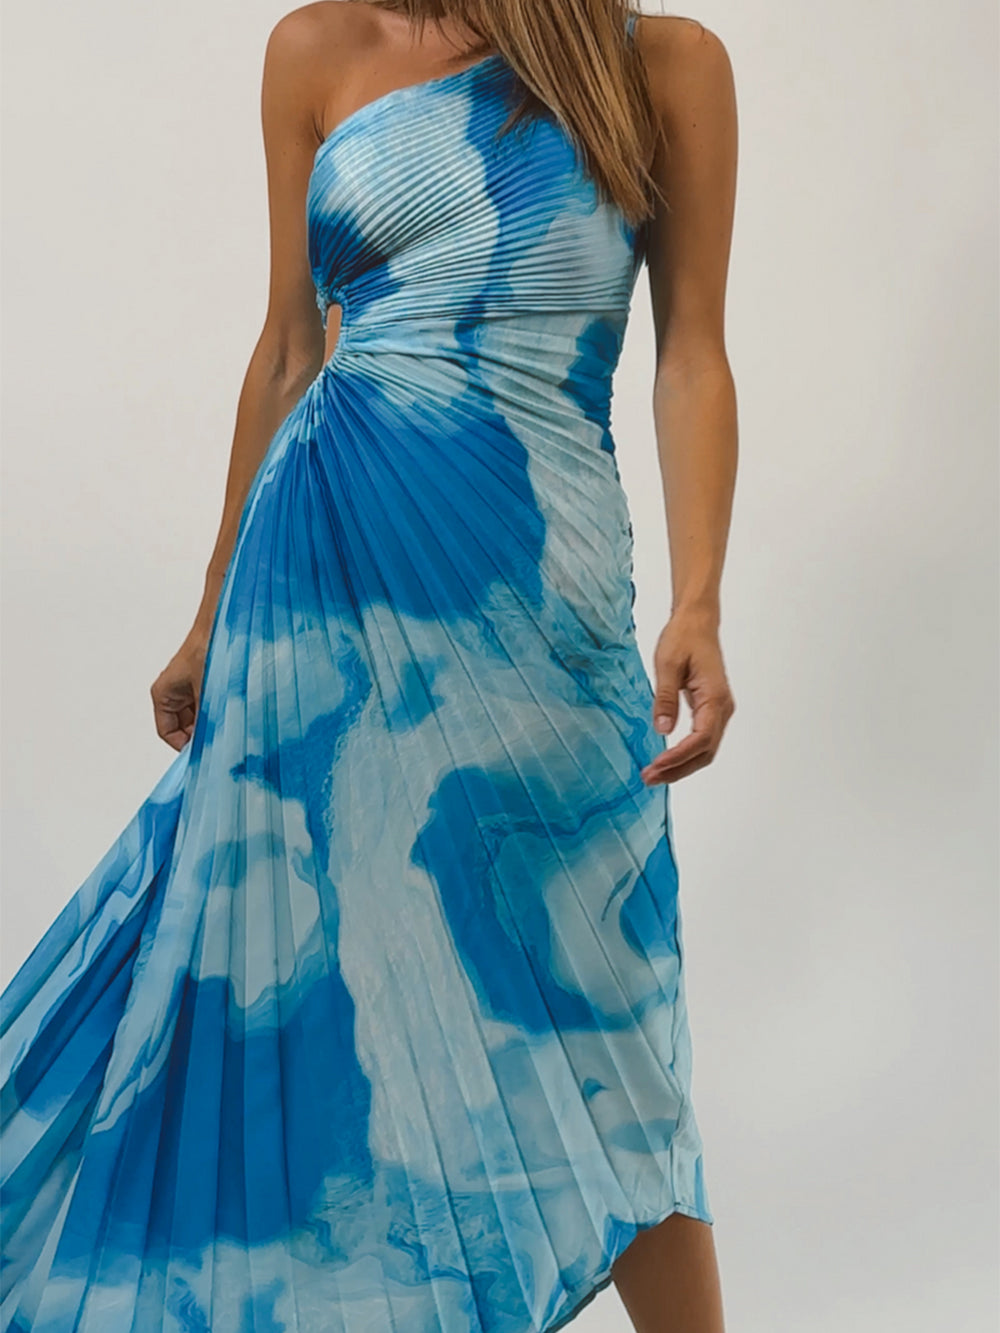 सर्फ ब्लू मैडी ड्रेस